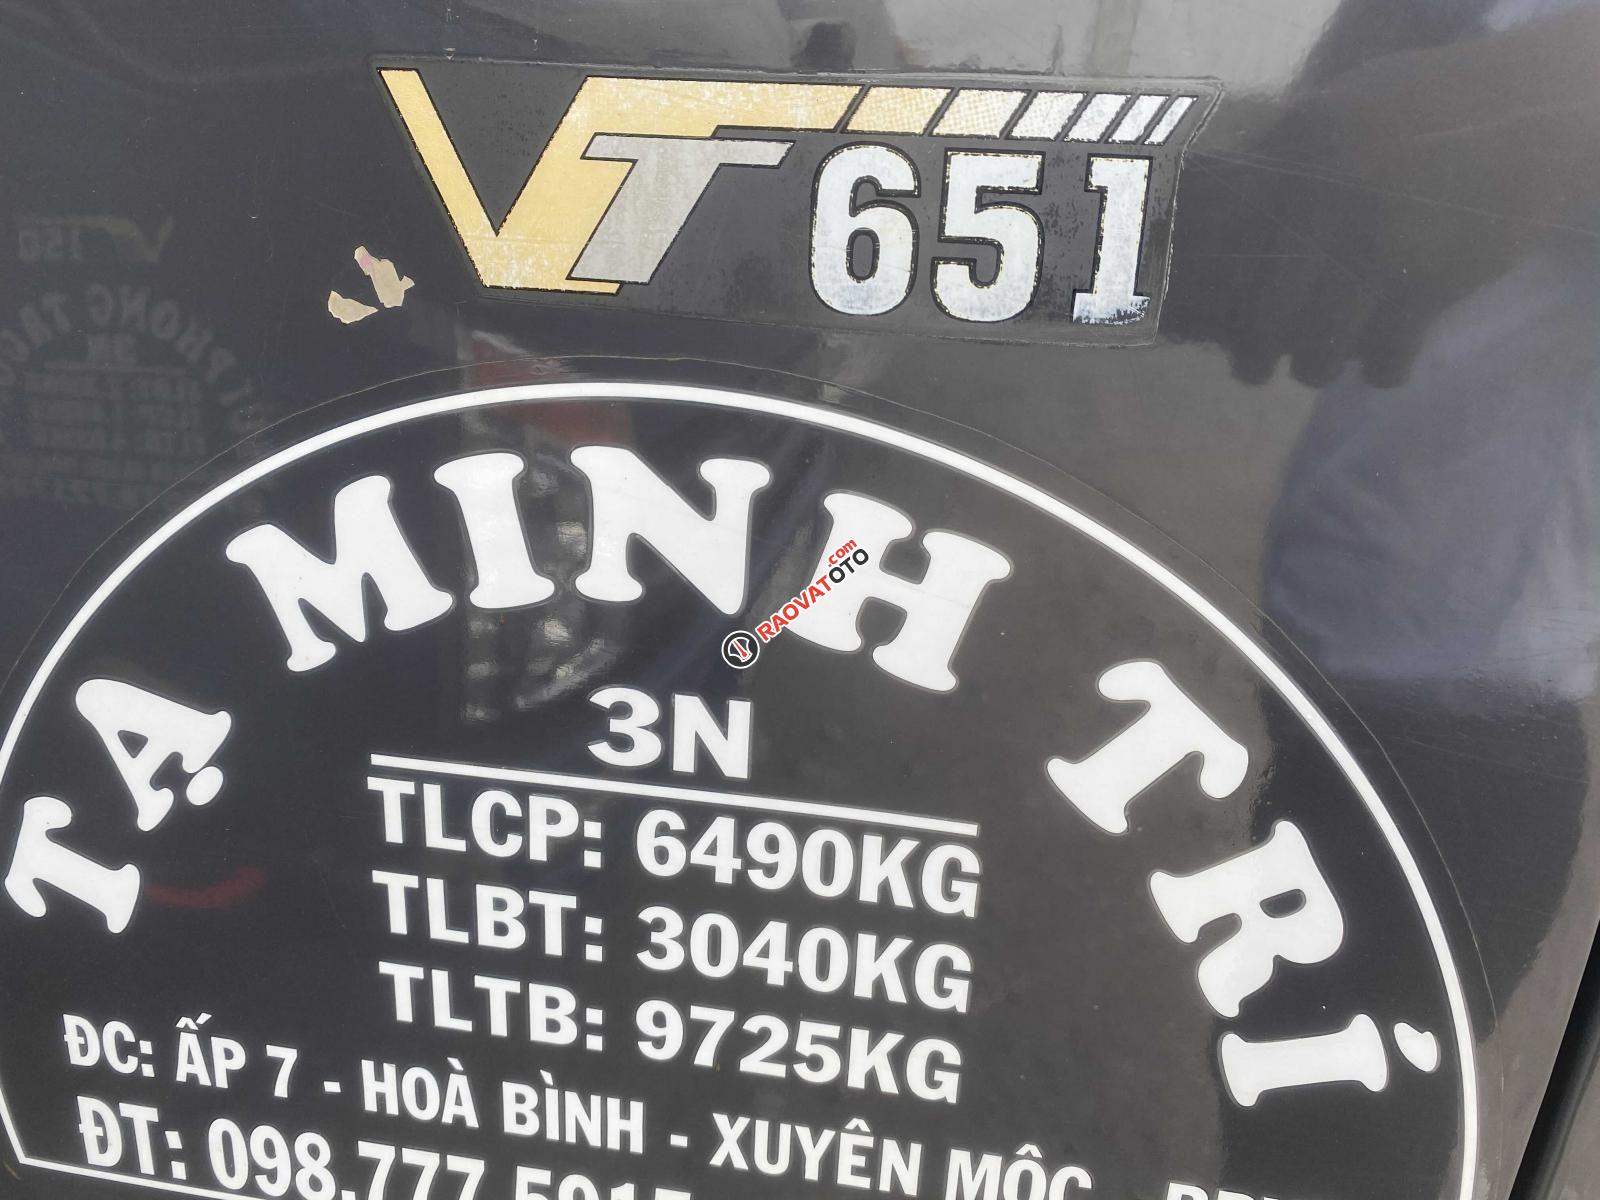 Bán đấu giá chiếc xe tải Veam VT651 đời 2016, màu đen, giá thấp-1